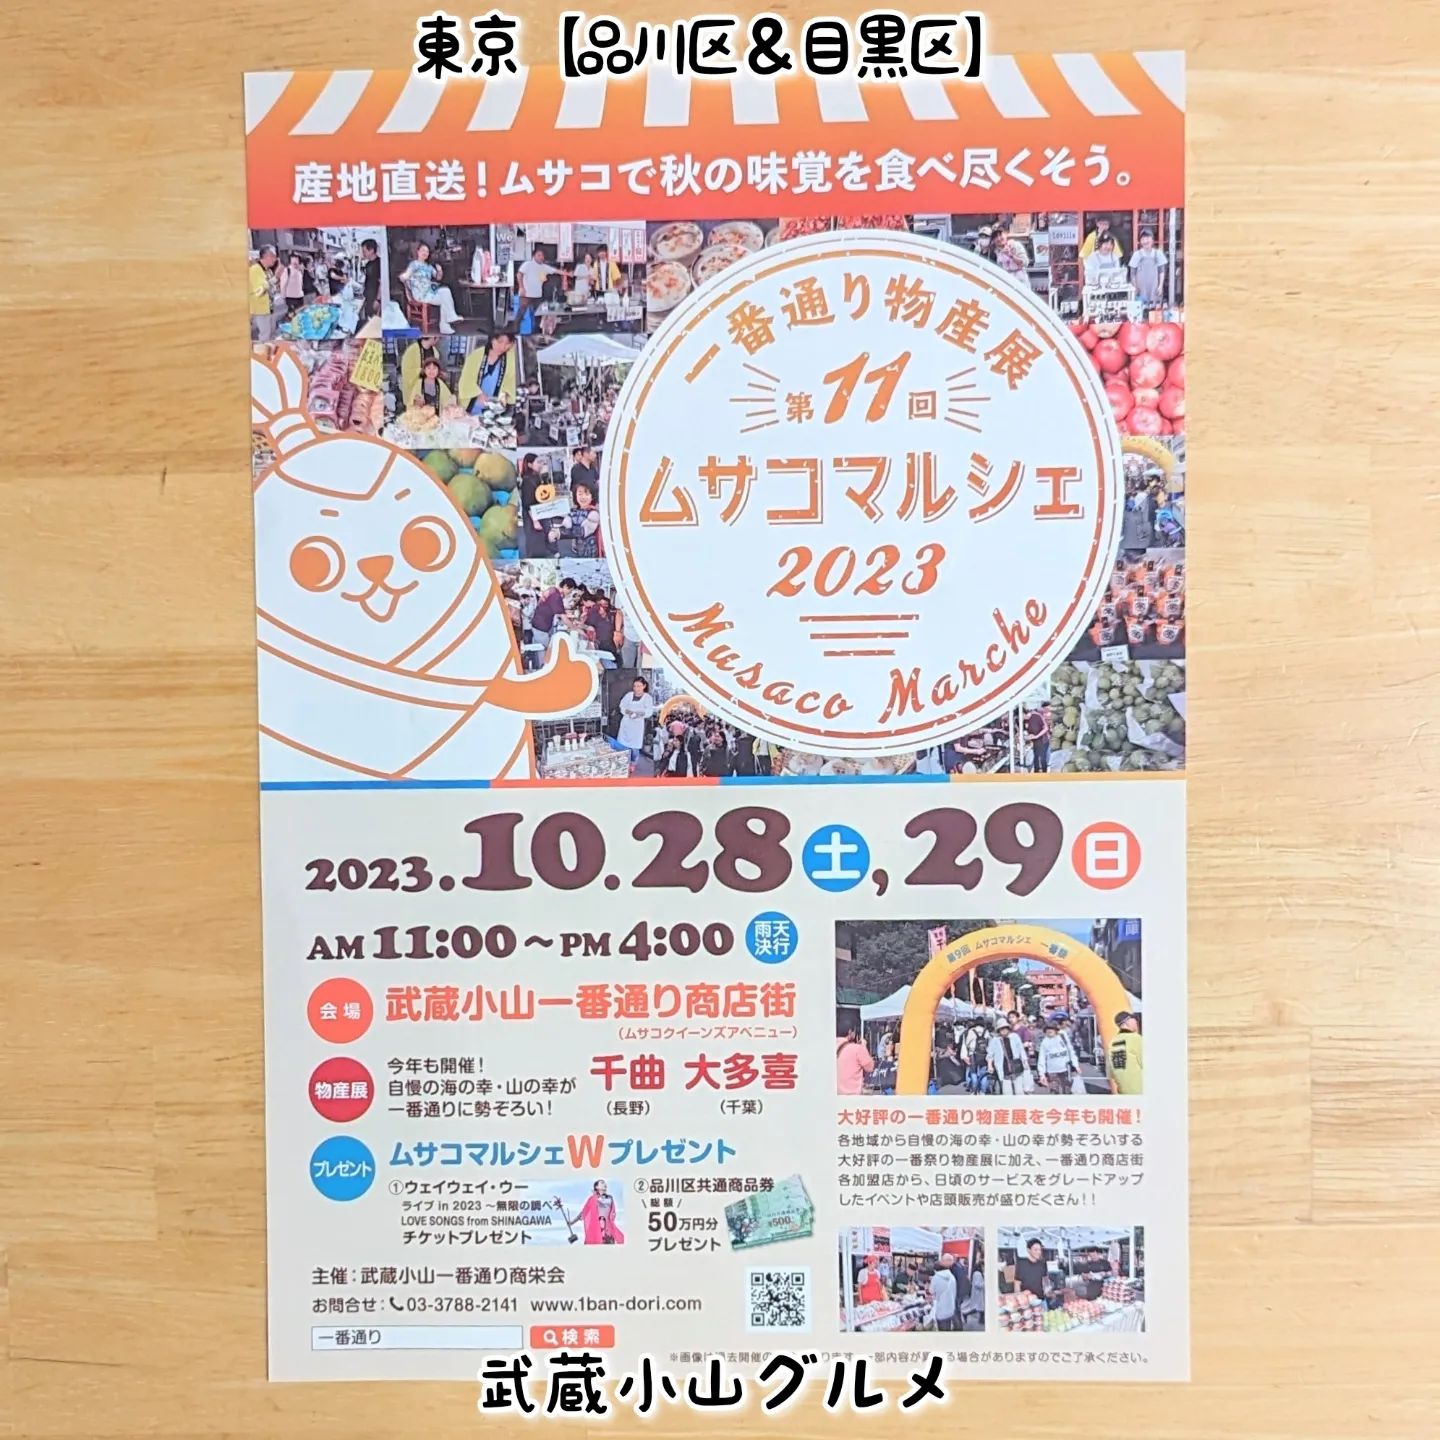 #武蔵小山グルメ情報 #ムサコマルシェ 2023年10月28日、29日に第11回ムサコマルシェが開催されます！武蔵小山の一番通りにある飲食店がたくさん出店しているので武蔵小山を一気に味わえるチャンスタイムでございますぞ！場所は、武蔵小山一番通り商店街でございます。パルム商店街のマクドナルドがある十字路で交差してる通りでございますね。【侍猫に依頼】お店の宣伝やイベント告知などなどPR投稿をご希望の際は、お気軽にDMでお問い合わせください！【侍猫が無料】ただいまフォロワー3000人達成記念として無料でインスタストーリーへのシェアを受付ております！ぜひムサコ近隣のグルメ情報を告知する際にご活用ください！【侍猫を応援】「フォロー」＆「いいね」＆「保存」どうぞよろしくお願いします！さらにプロフィールからリンクしてる武蔵小山グルメ情報サイトも見ていただきますとものすごく助かります！ #武蔵小山 #武蔵小山グルメ #西小山 #戸越銀座 #不動前 #碑文谷 #戸越 #中延 #荏原中延 #目黒本町 #下目黒 #品川区 #品川区グルメ #目黒区 #目黒区グルメ #東京グルメ #東京散歩 #東京観光 #東京デート #東京旅行  #tokyotrip #tokyo #japanesefood #japantravel #マルシェ #武蔵小山イベント #東京イベント